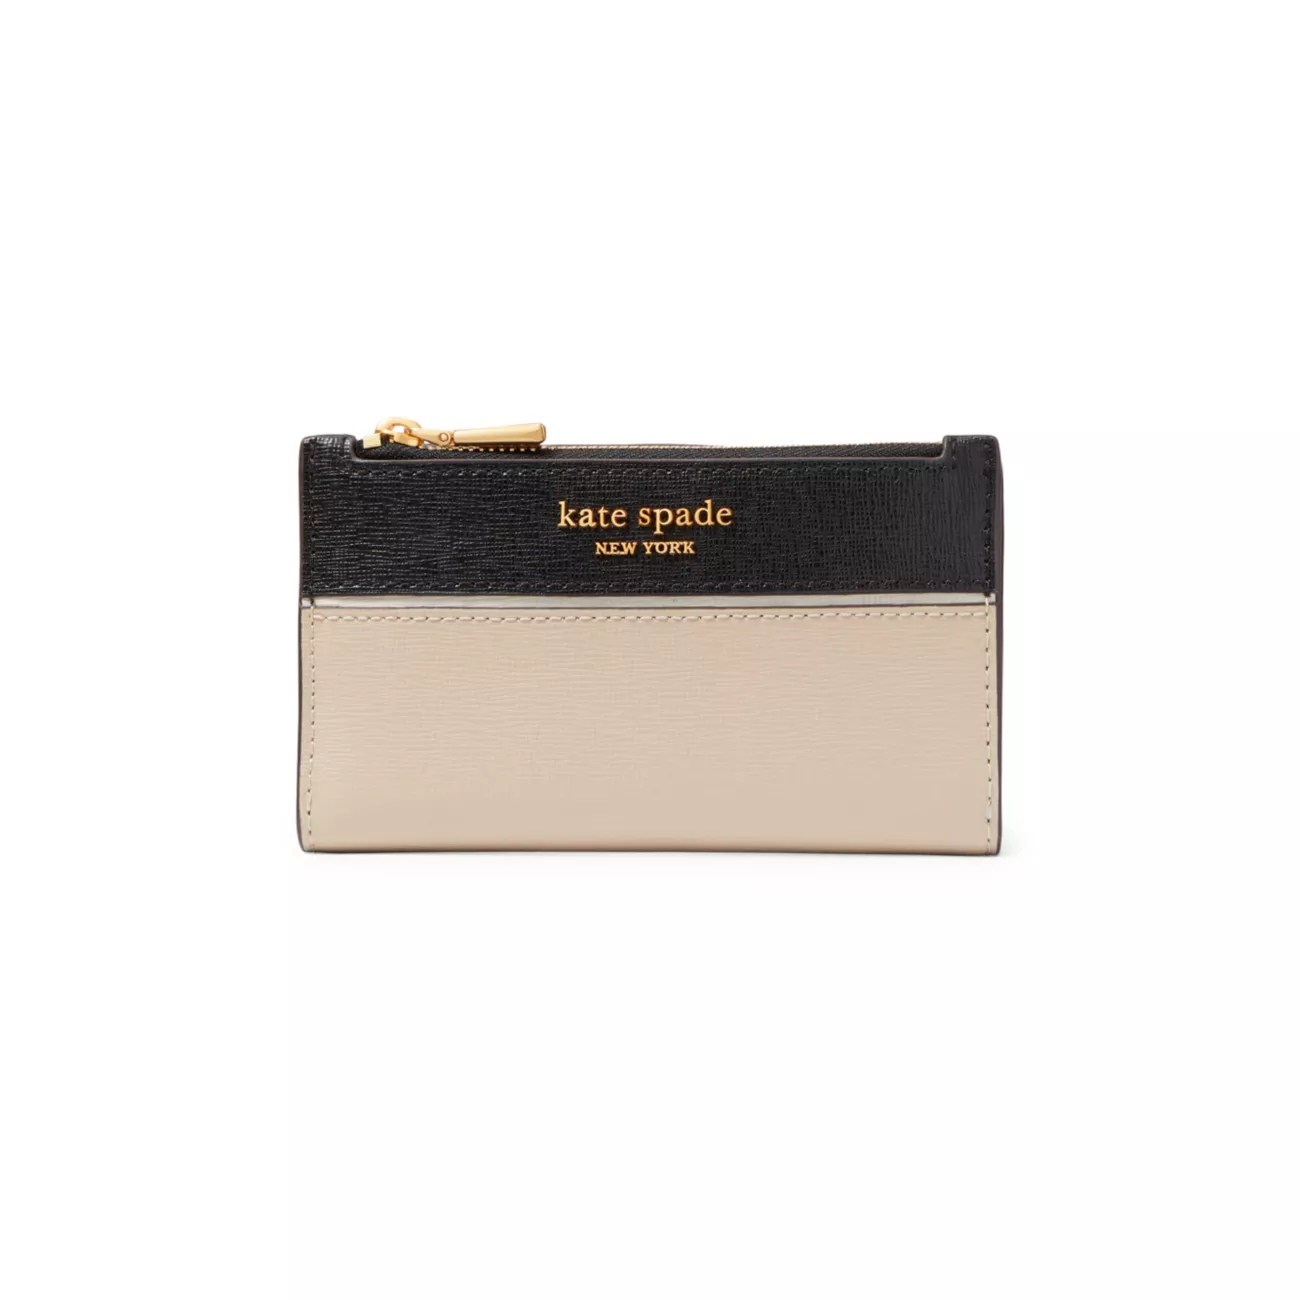 Маленький тонкий кошелек двойного сложения Morgan с цветными блоками из сафьяновой кожи Kate Spade New York